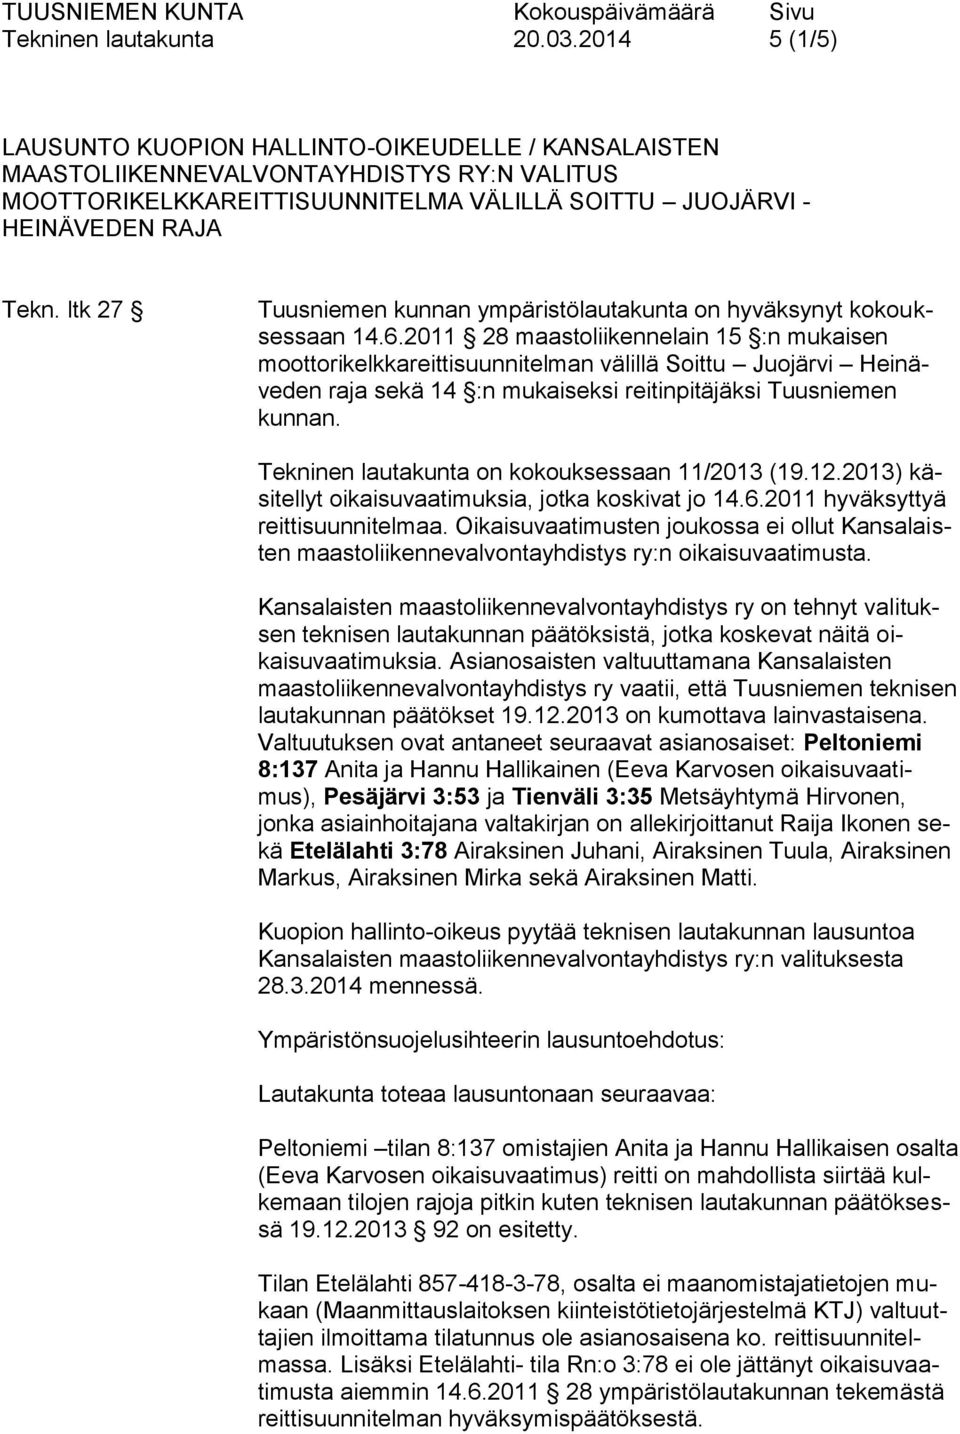 ltk 27 Tuusniemen kunnan ympäristölautakunta on hyväksynyt kokouksessaan 14.6.